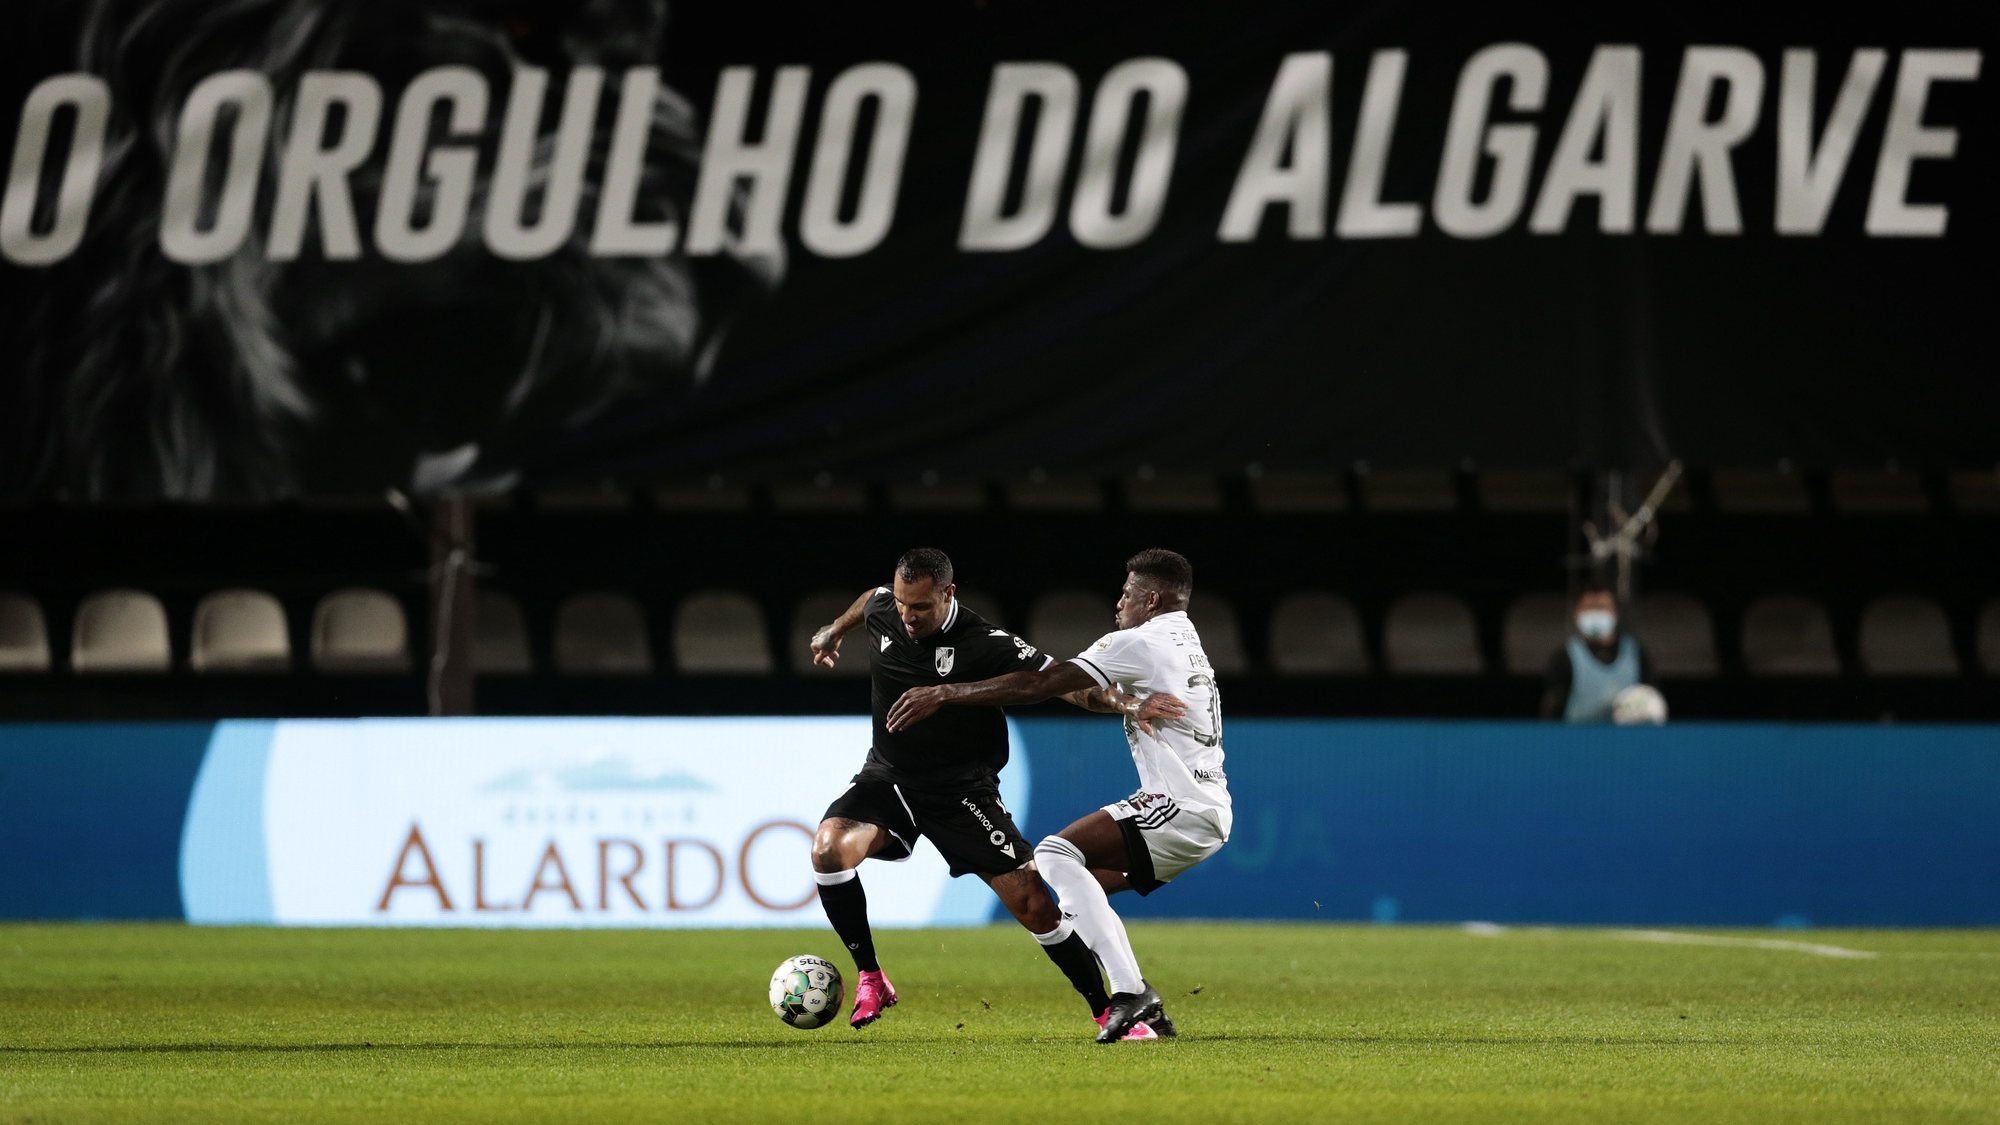 Um jogador do Farense (D), e do Vitória de Guimarães em ação durante o jogo da 31.ª jornada da Primeira Liga de futebol, realizado no Estádio São Luís, em Faro, 06 de maio de 2021. FILIPE FARINHA/LUSA